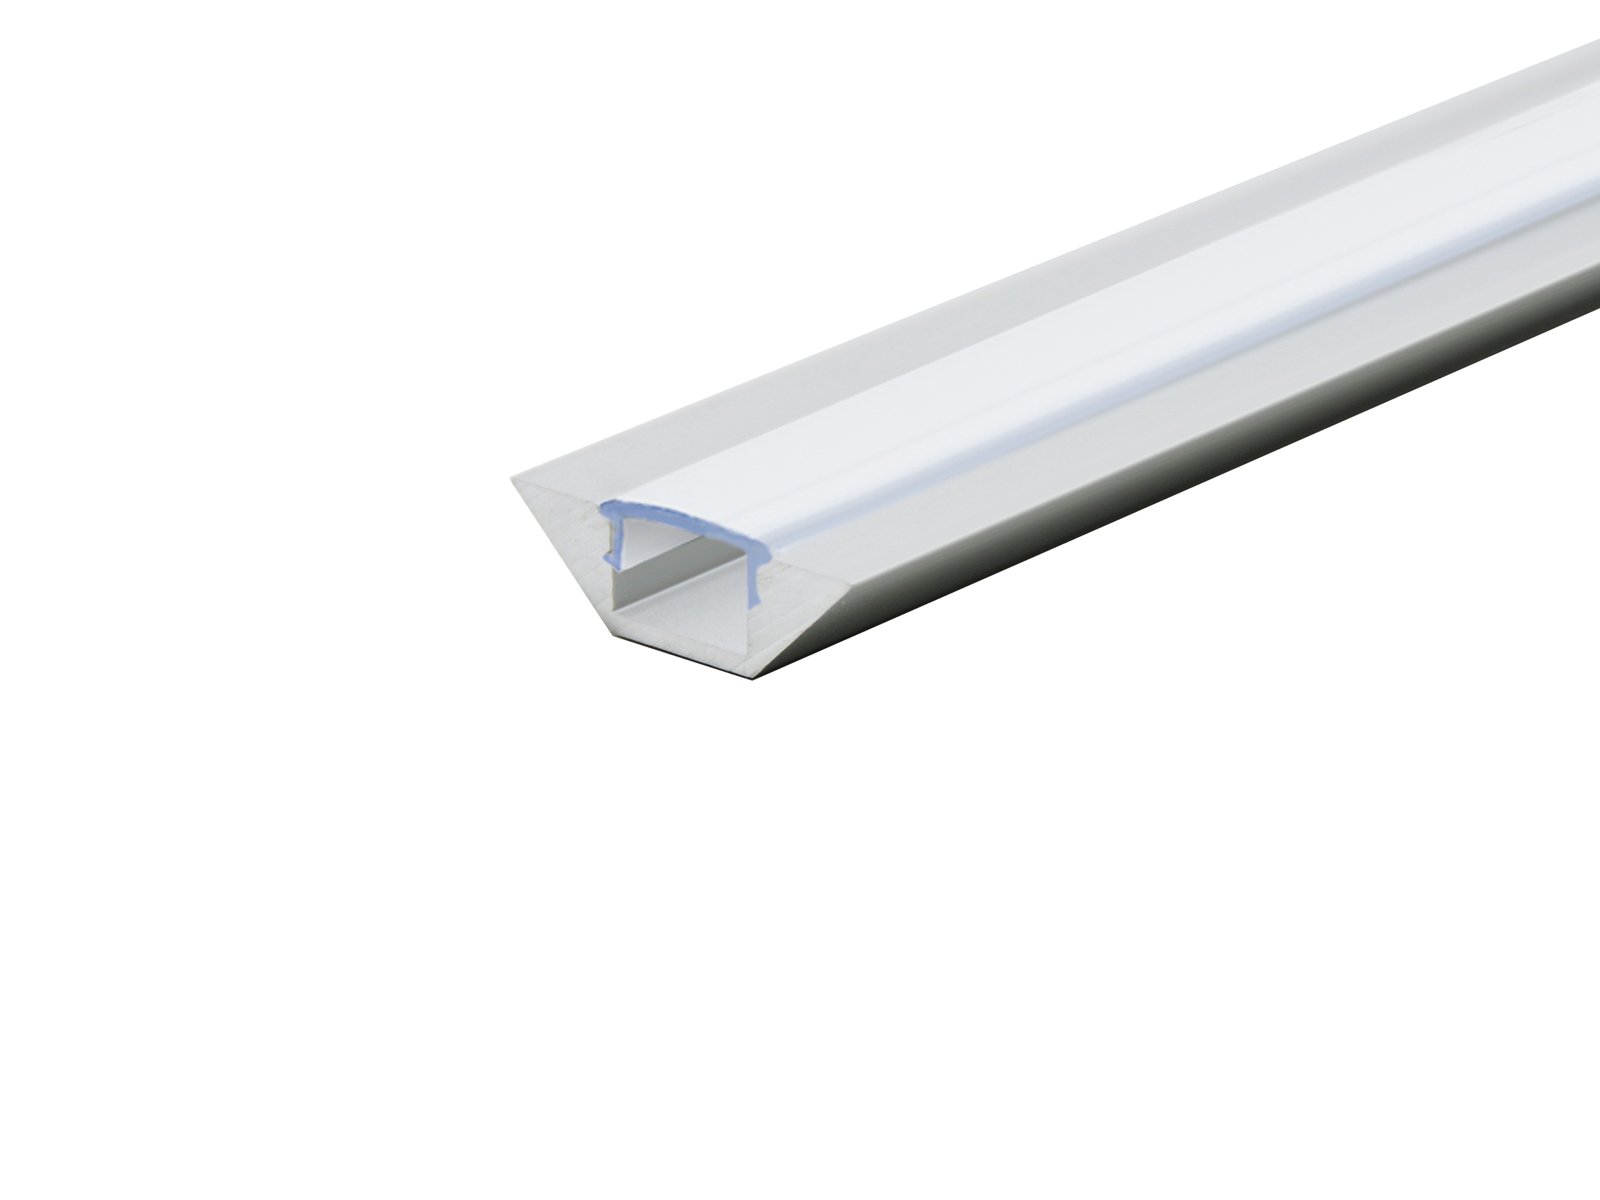 1m ALU-Profil/Leiste "ECKE" klare/durchsichtige Abdeckung für LED-Streifen 